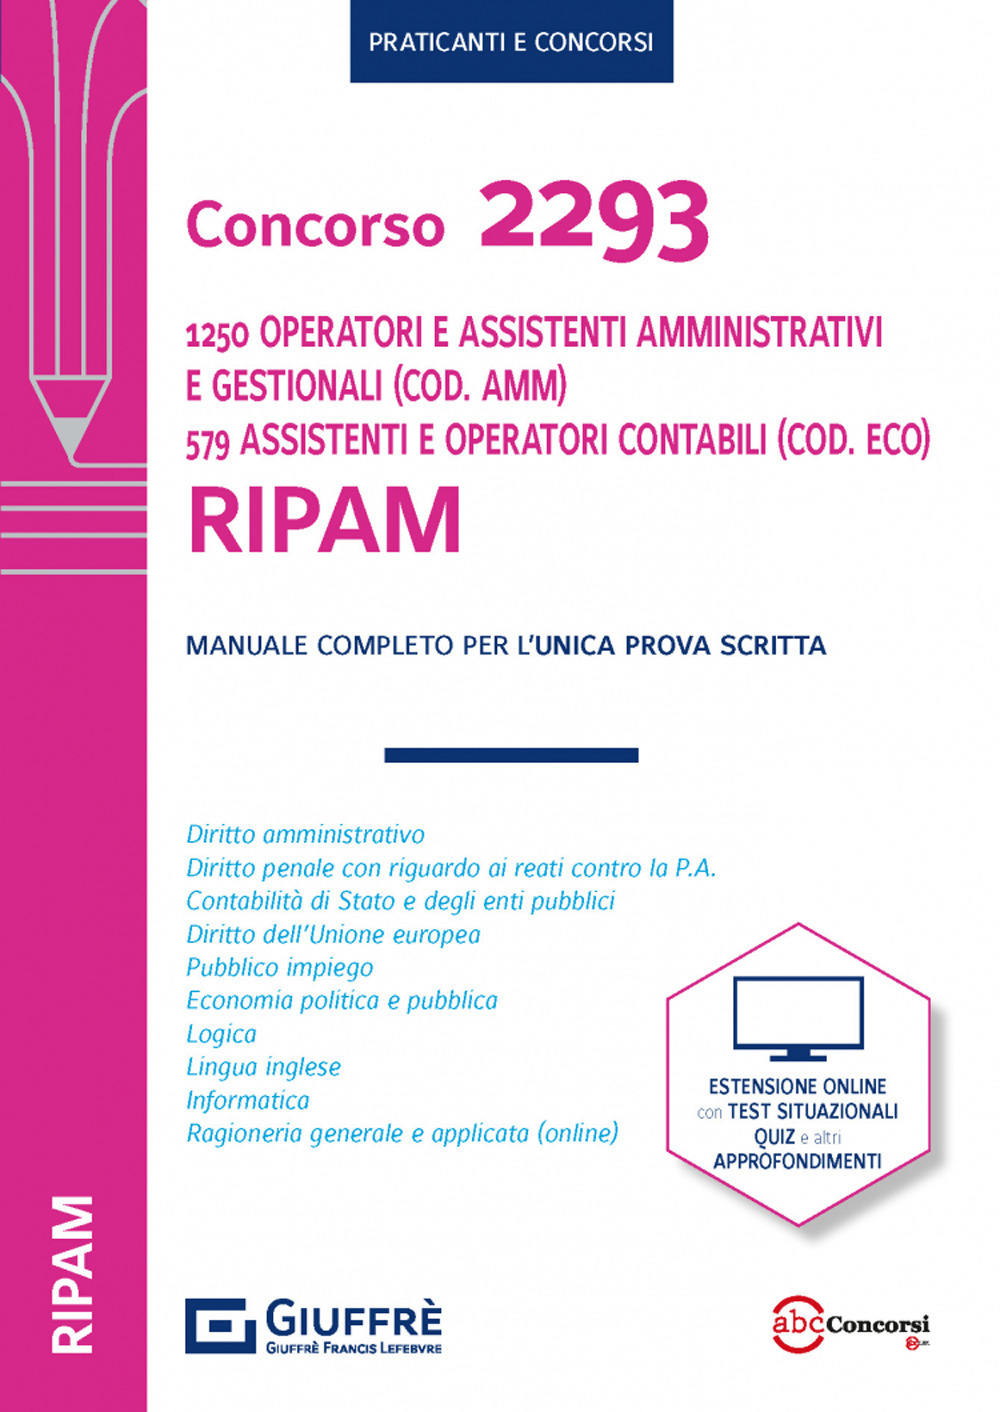 Concorso 2293 RIPAM 1250 operatori e assistenti amministrativi (Cod. AMM.) 579 assistenti e operatori amministrativo contabili (Cod. ECO)